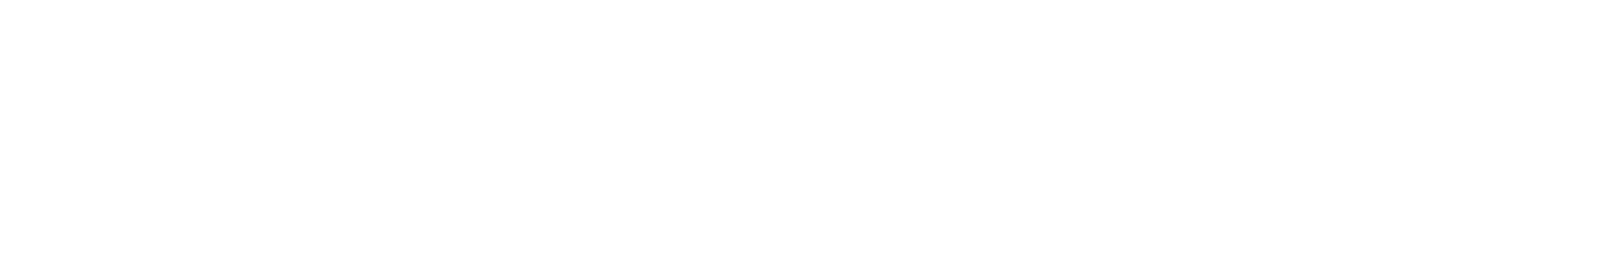 Sleep Number logo large for dark backgrounds (transparent PNG)